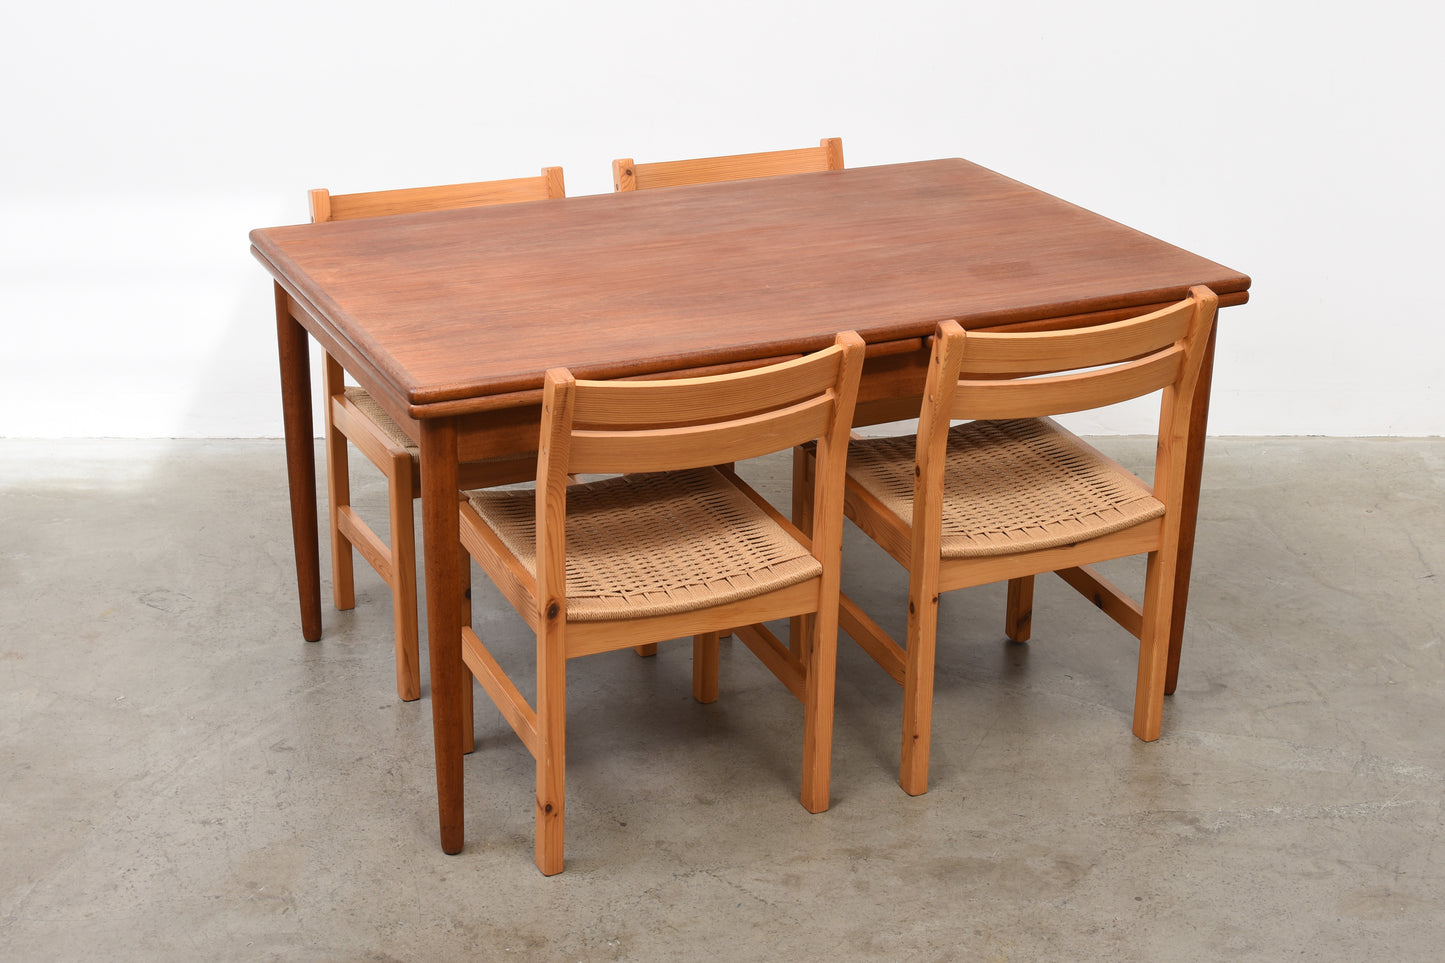 1960s Danish dining table in teak - 140L cm